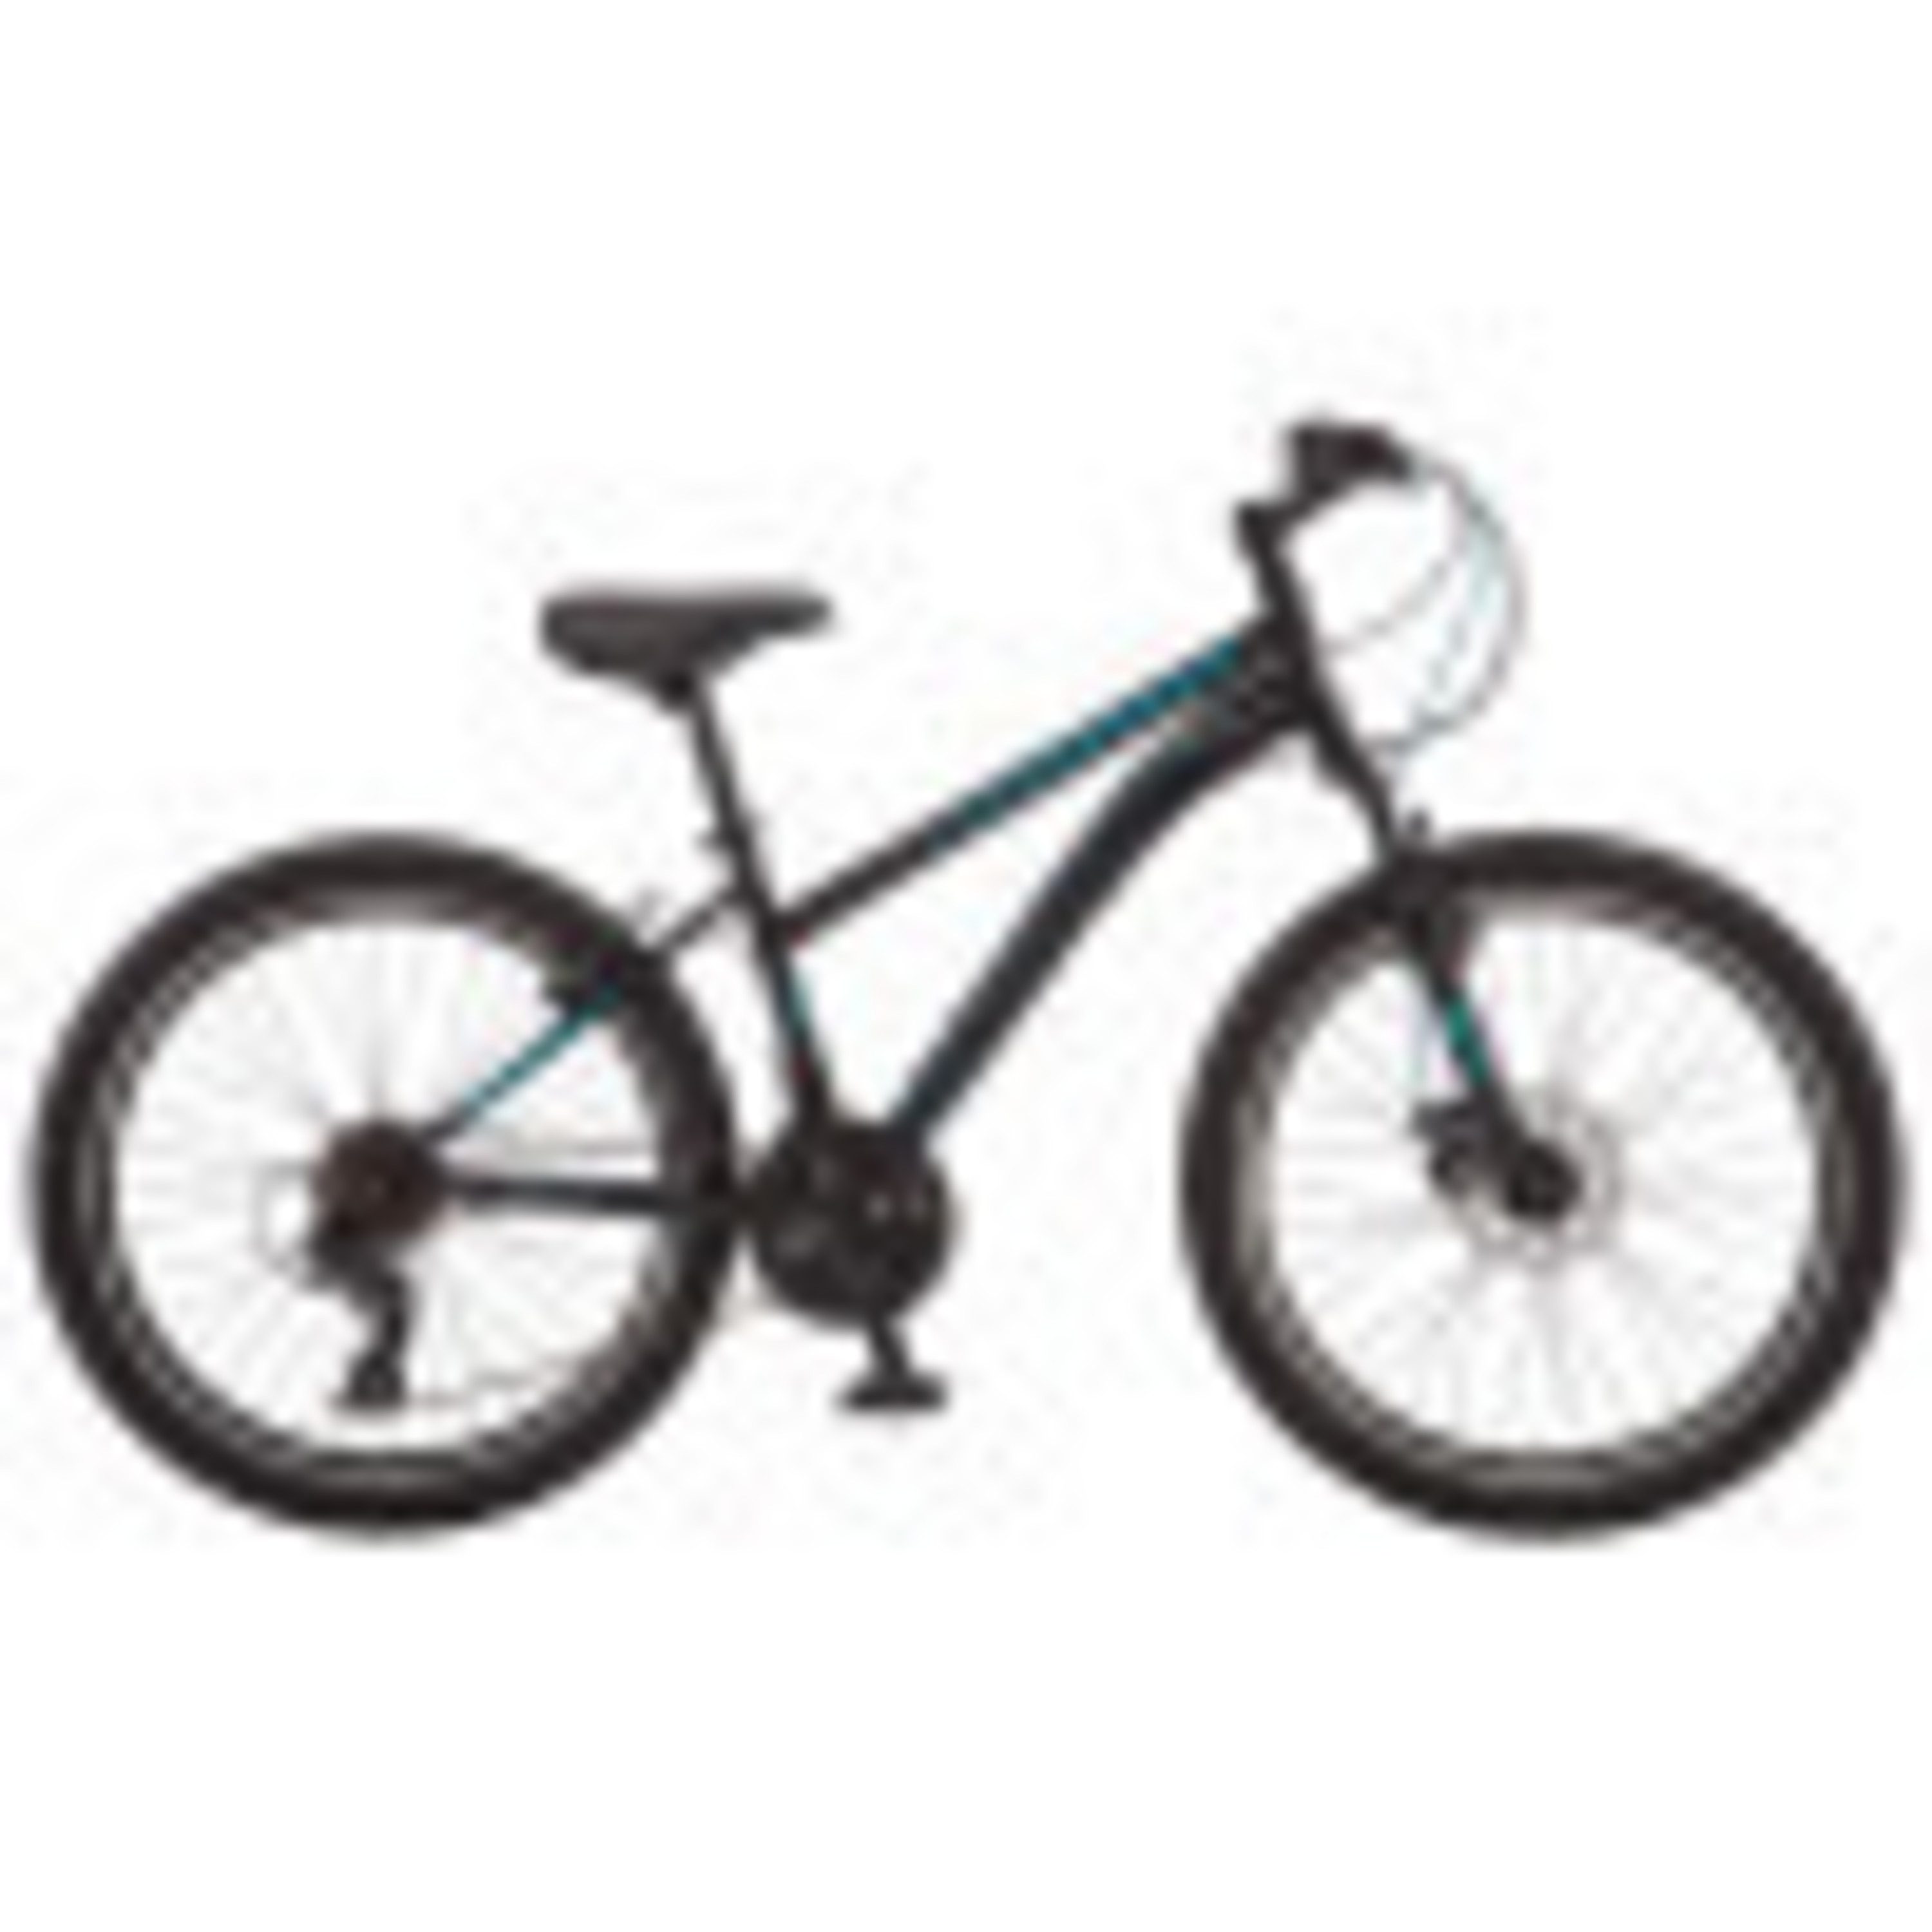 Schwinn 24-in. Sidewinder Unisex Mountain Bike, Black & Teal, 21 Speeds - image 3 of 8